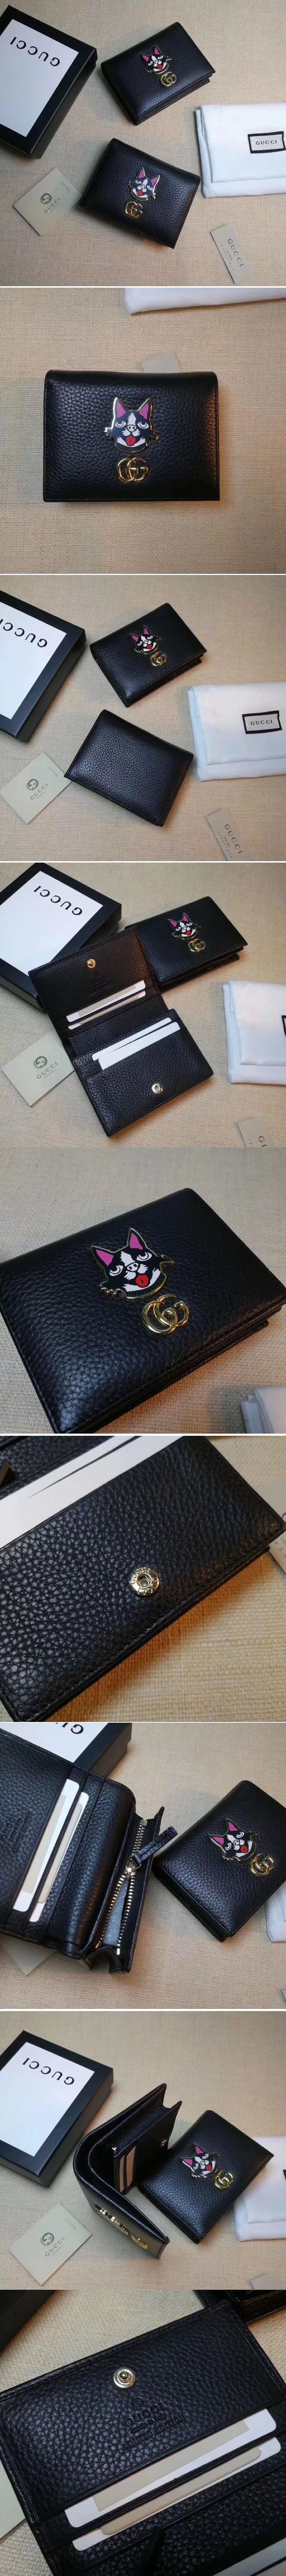 Replica Gucci 499325 Leather Card case with Bosco Black